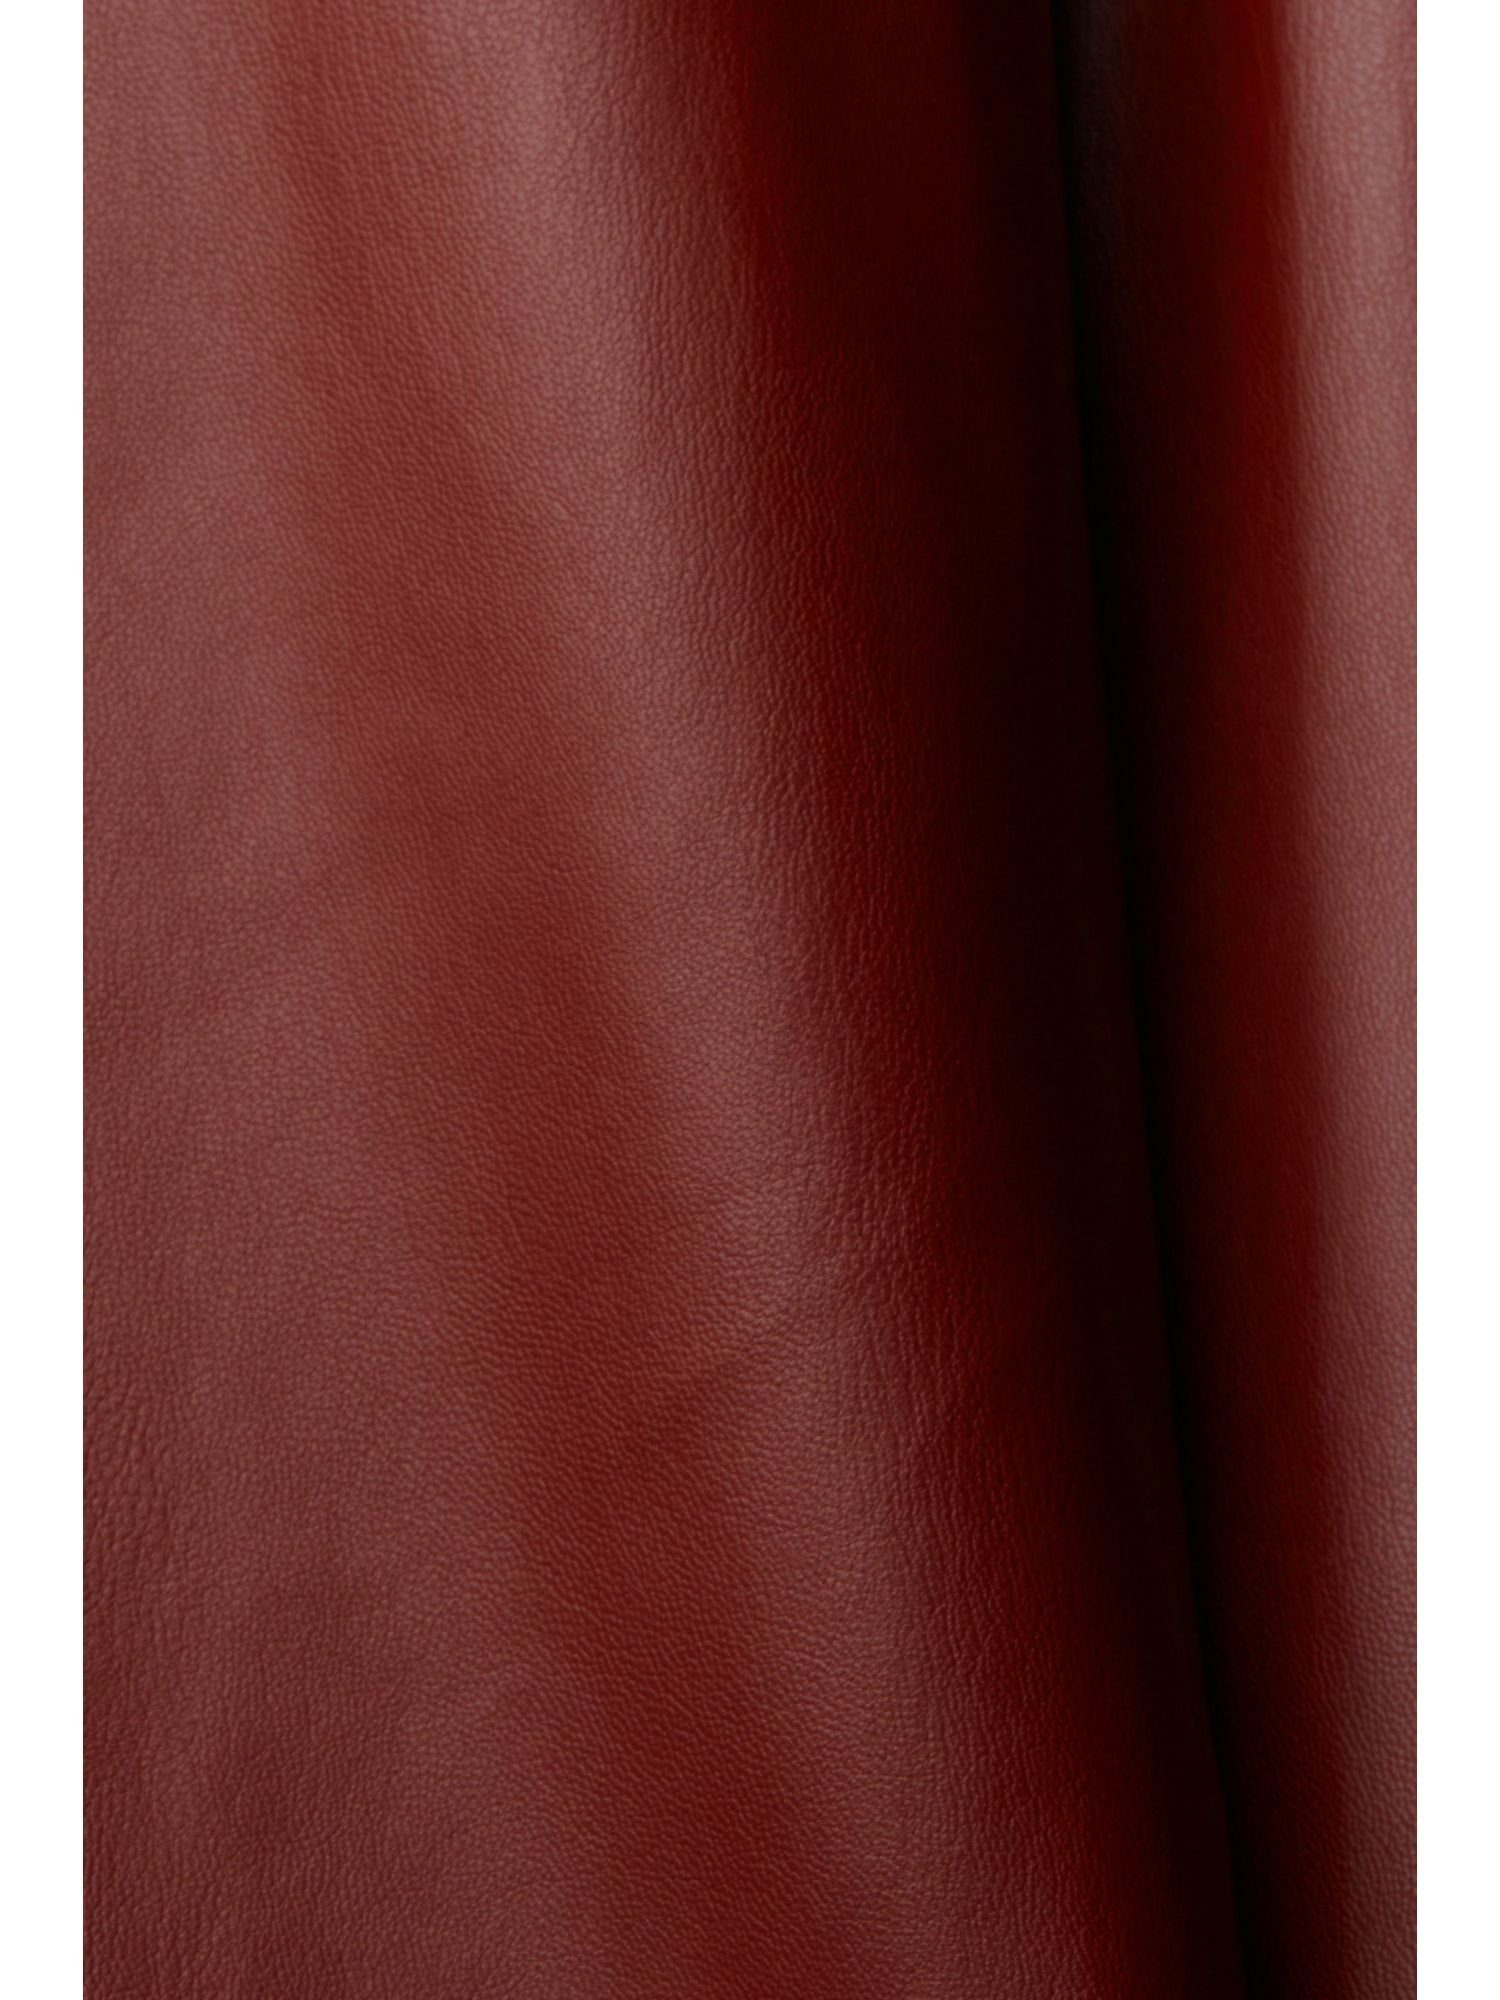 Esprit Collection in Cropped-Hose Lederoptik RED 7/8-Hose BORDEAUX